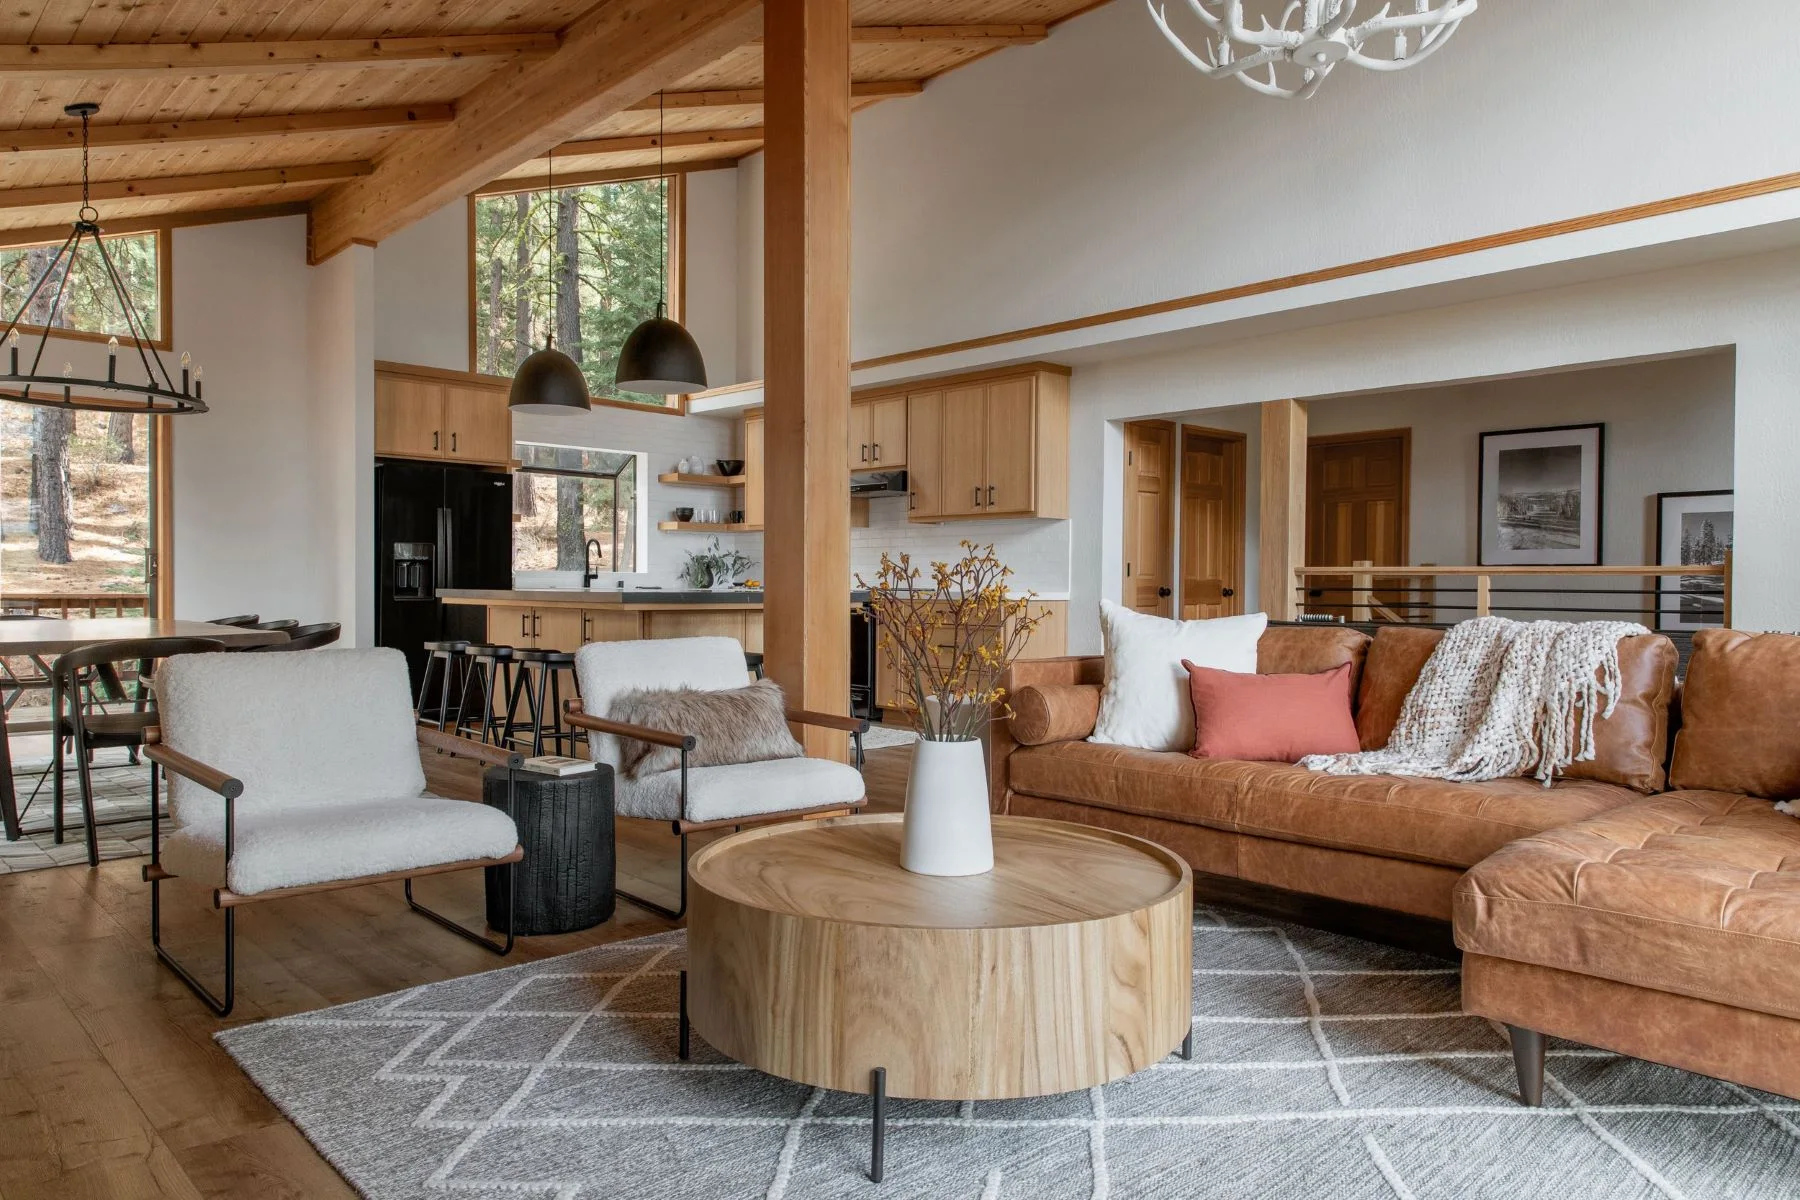 Trang trí phòng khách hiện đại với chất liệu gỗ tự nhiên